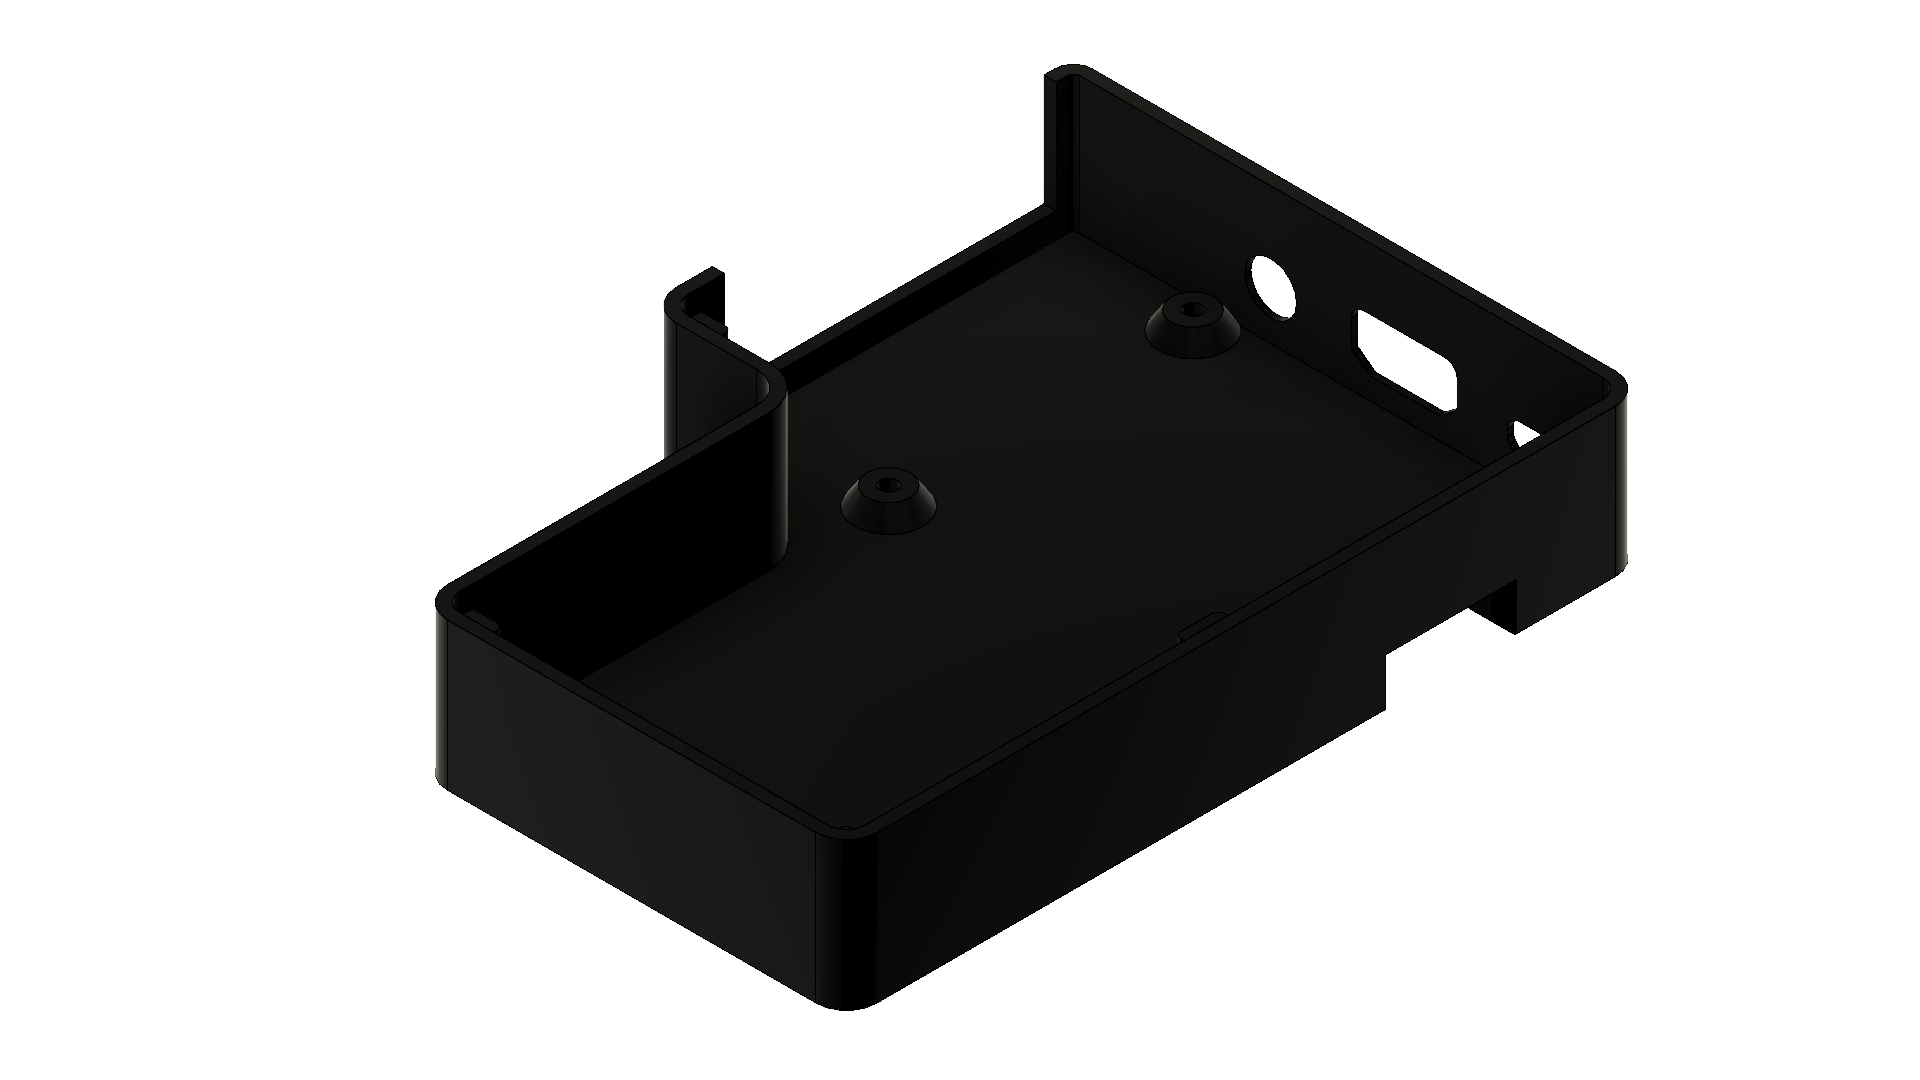 3D model of the custom Raspberry Pi case